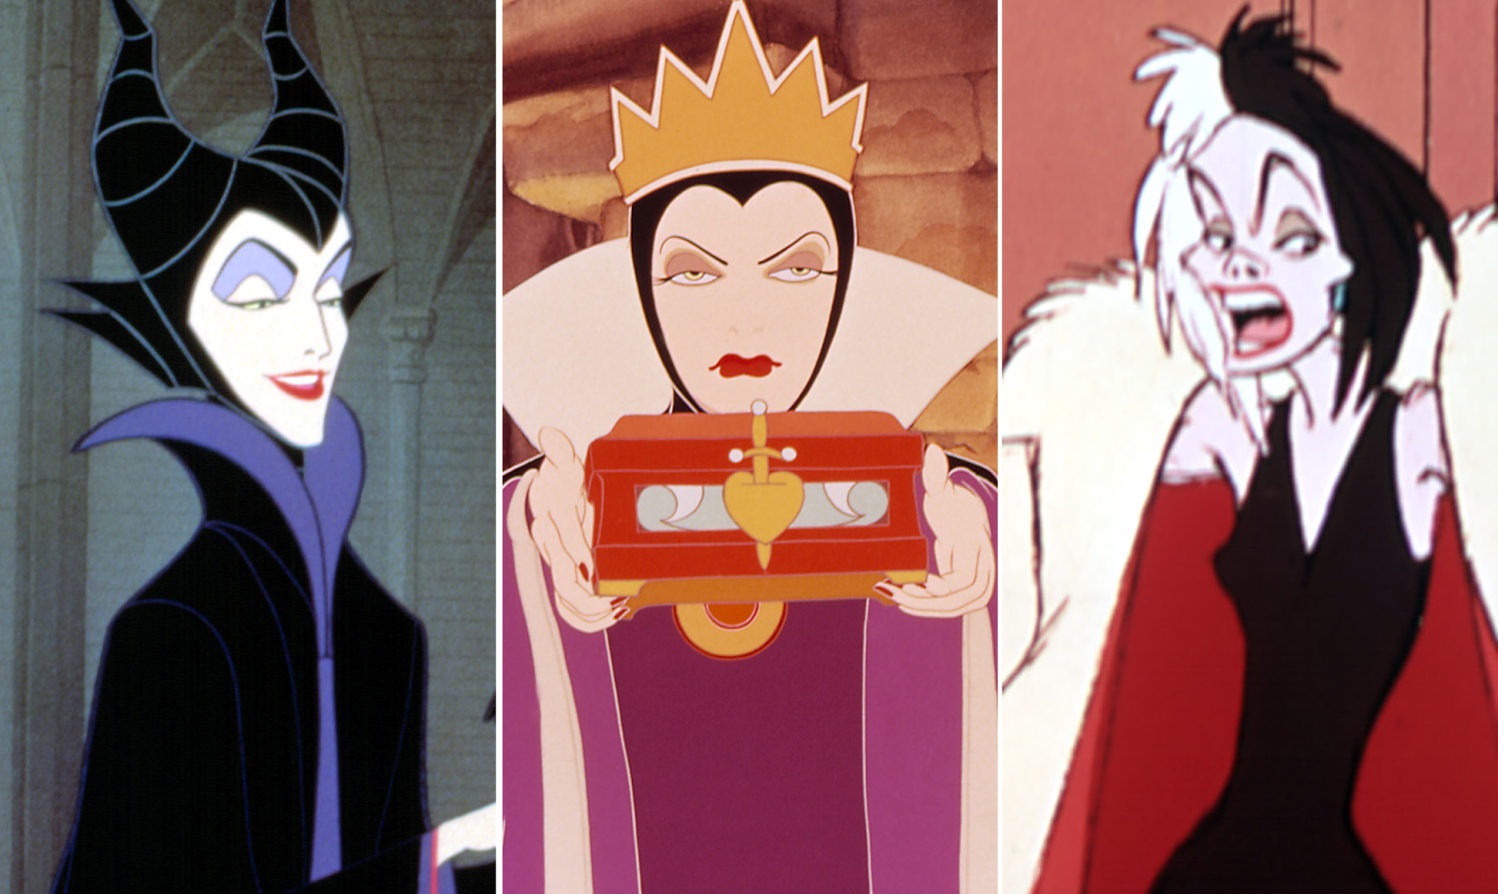 Tật xấu của bạn giống nhân vật phản diện nào trong phim hoạt hình Disney?